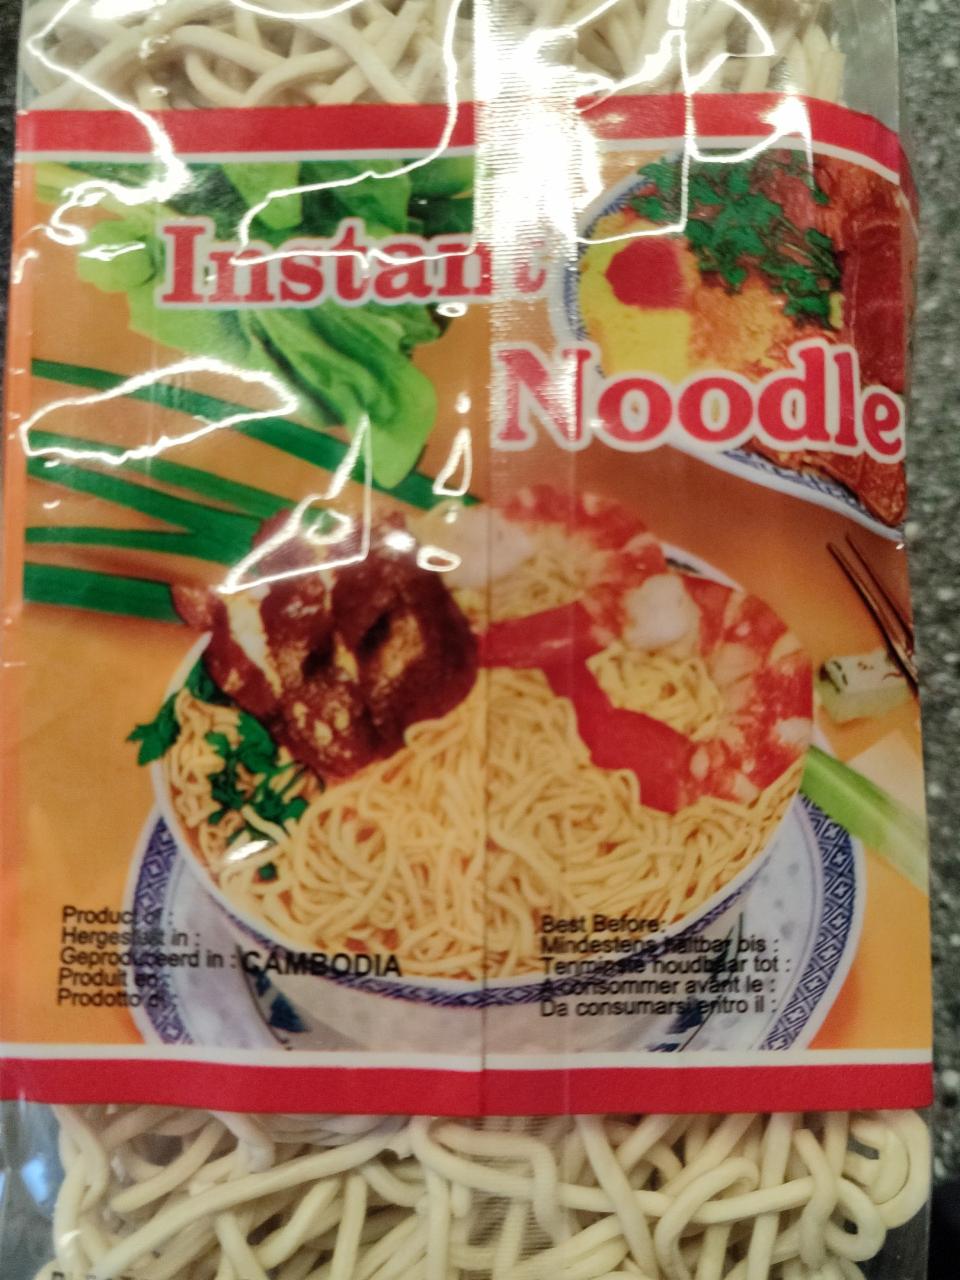 Fotografie - Instant noodle Heuschen